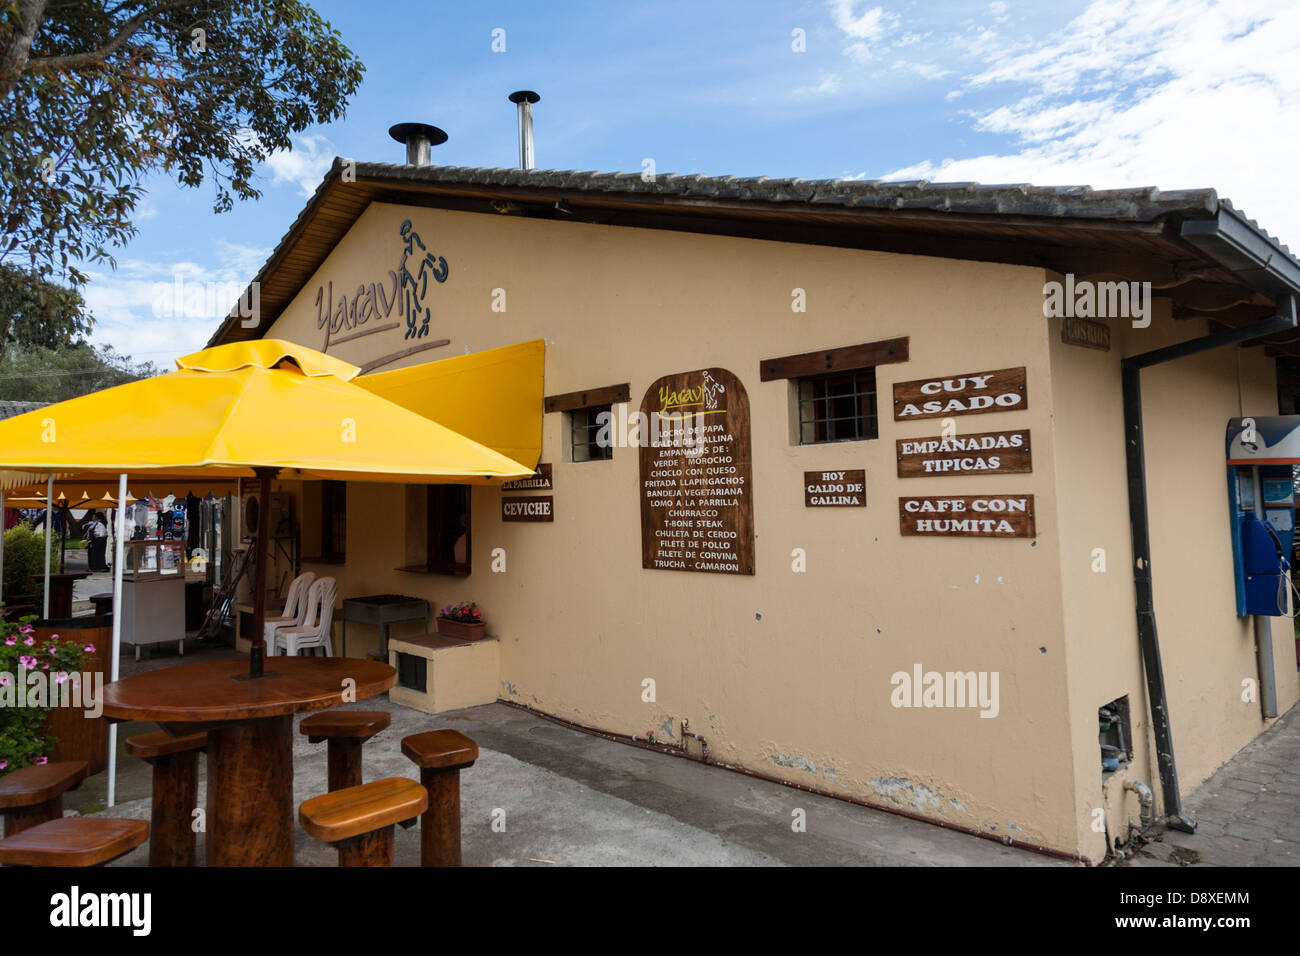 Restaurant on site, Mitad del Mundo, Monument, Marking the Equatorial Line, Near Quito, Ecuador Stock Photo